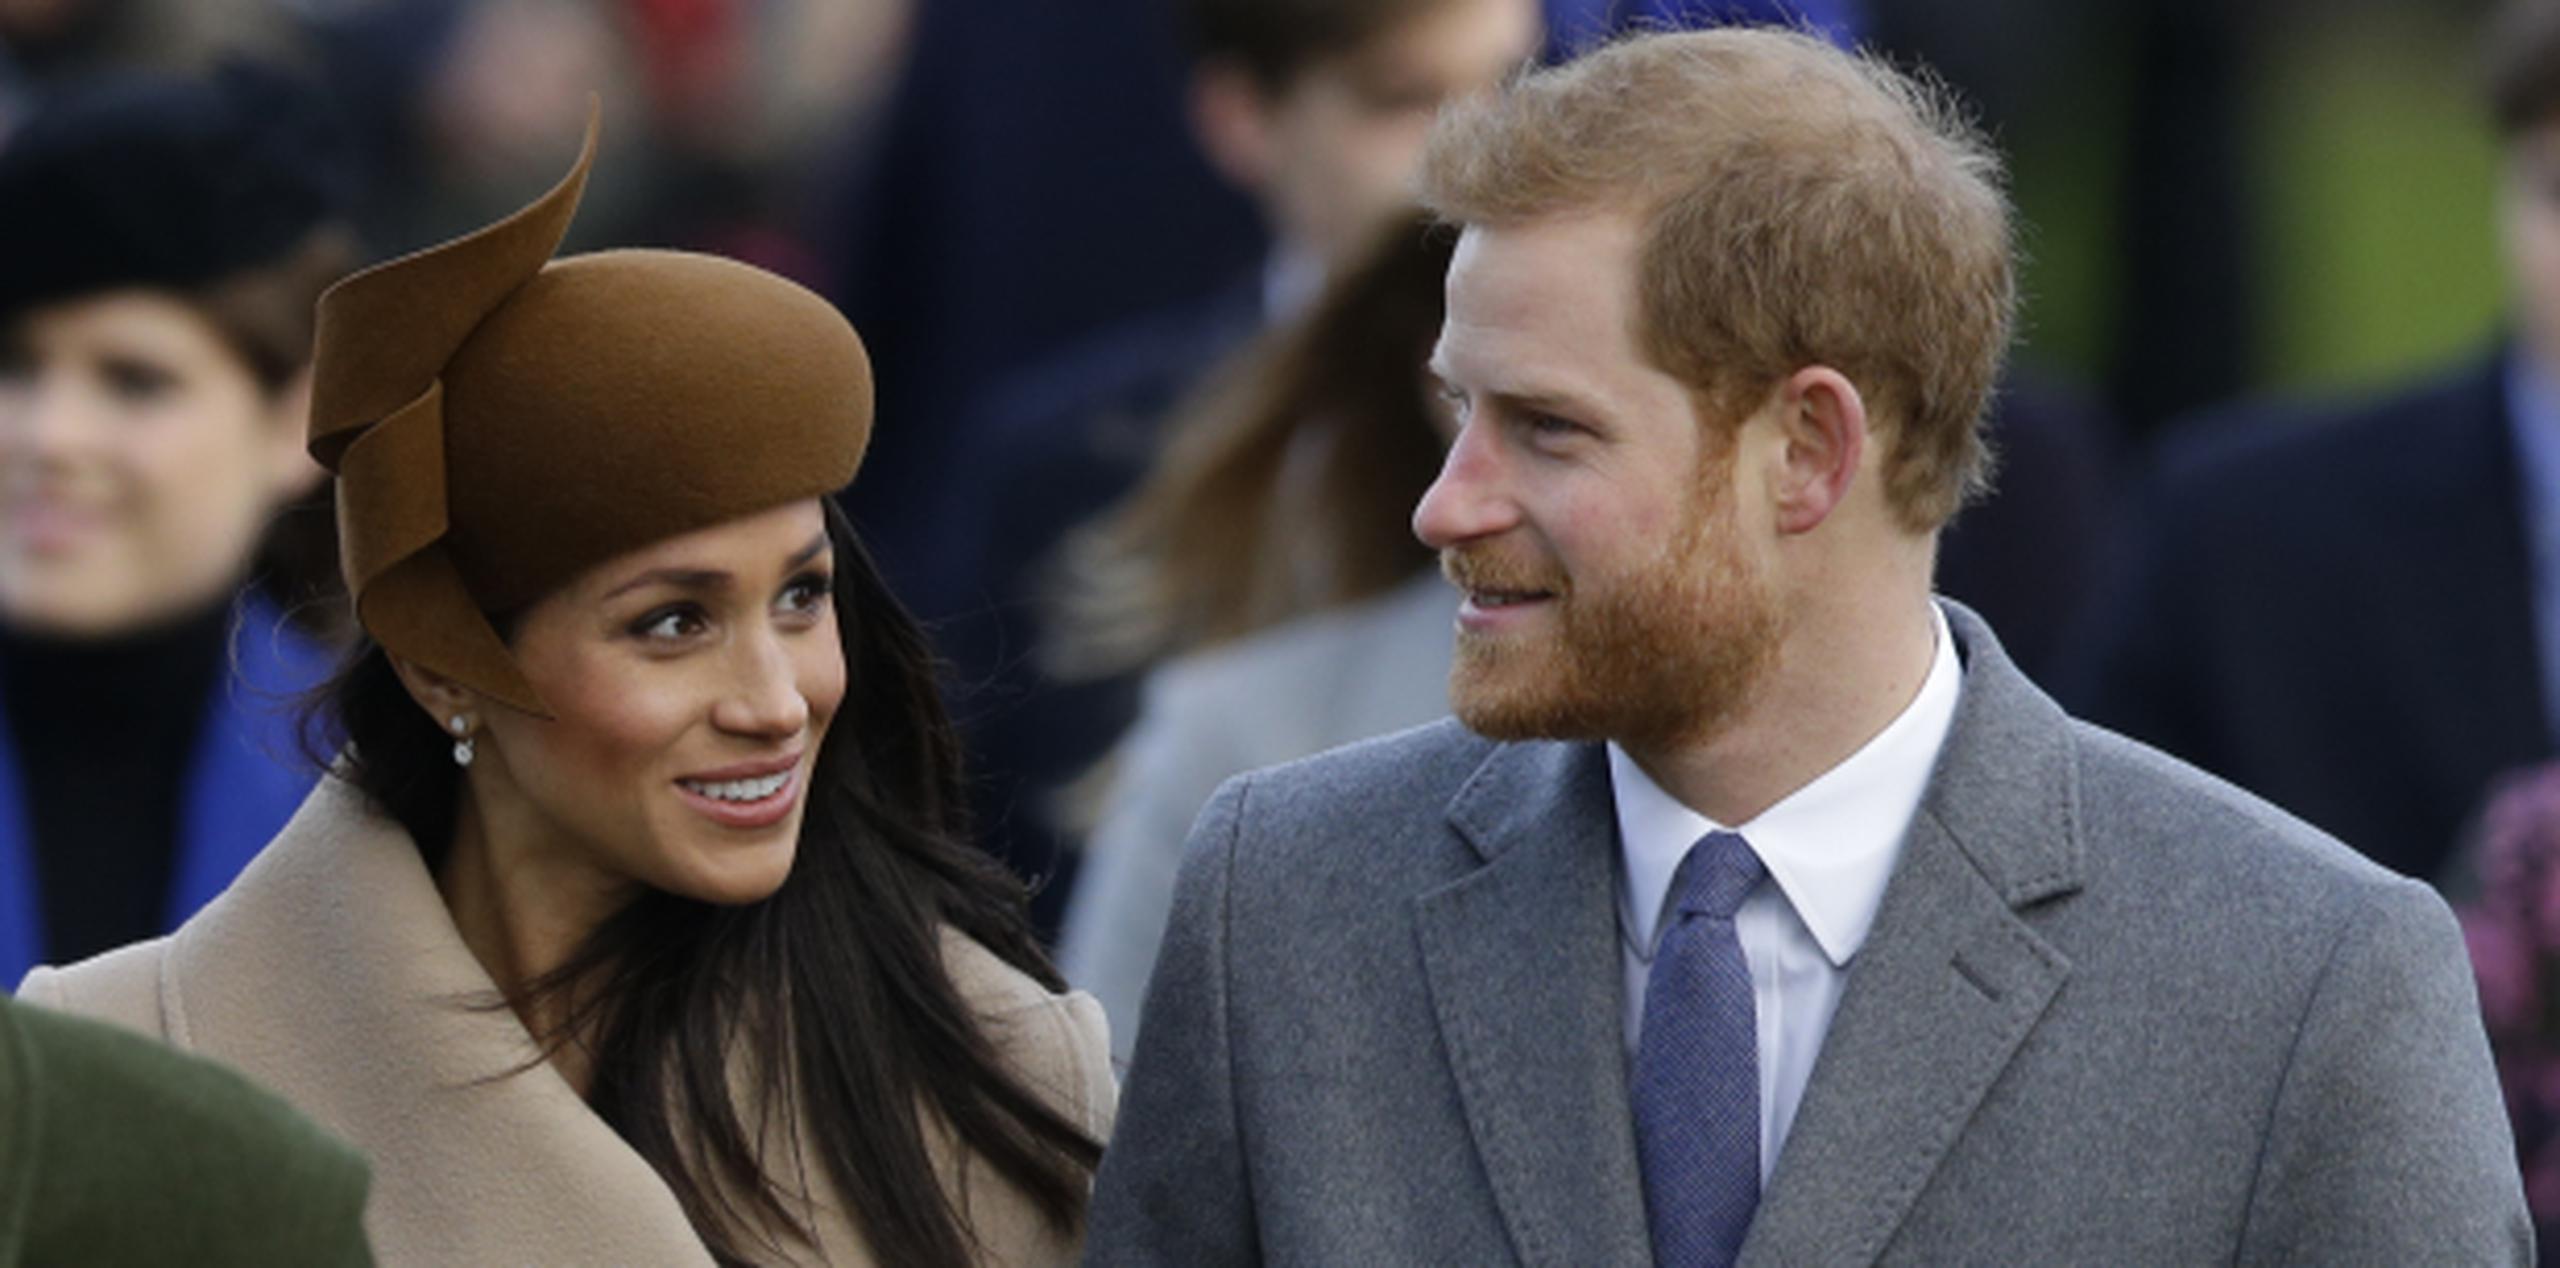 La boda del Meghan Markle y el príncipe Harry está pautada para el 19 de mayo del próximo año. (AP / Alastair Grant)